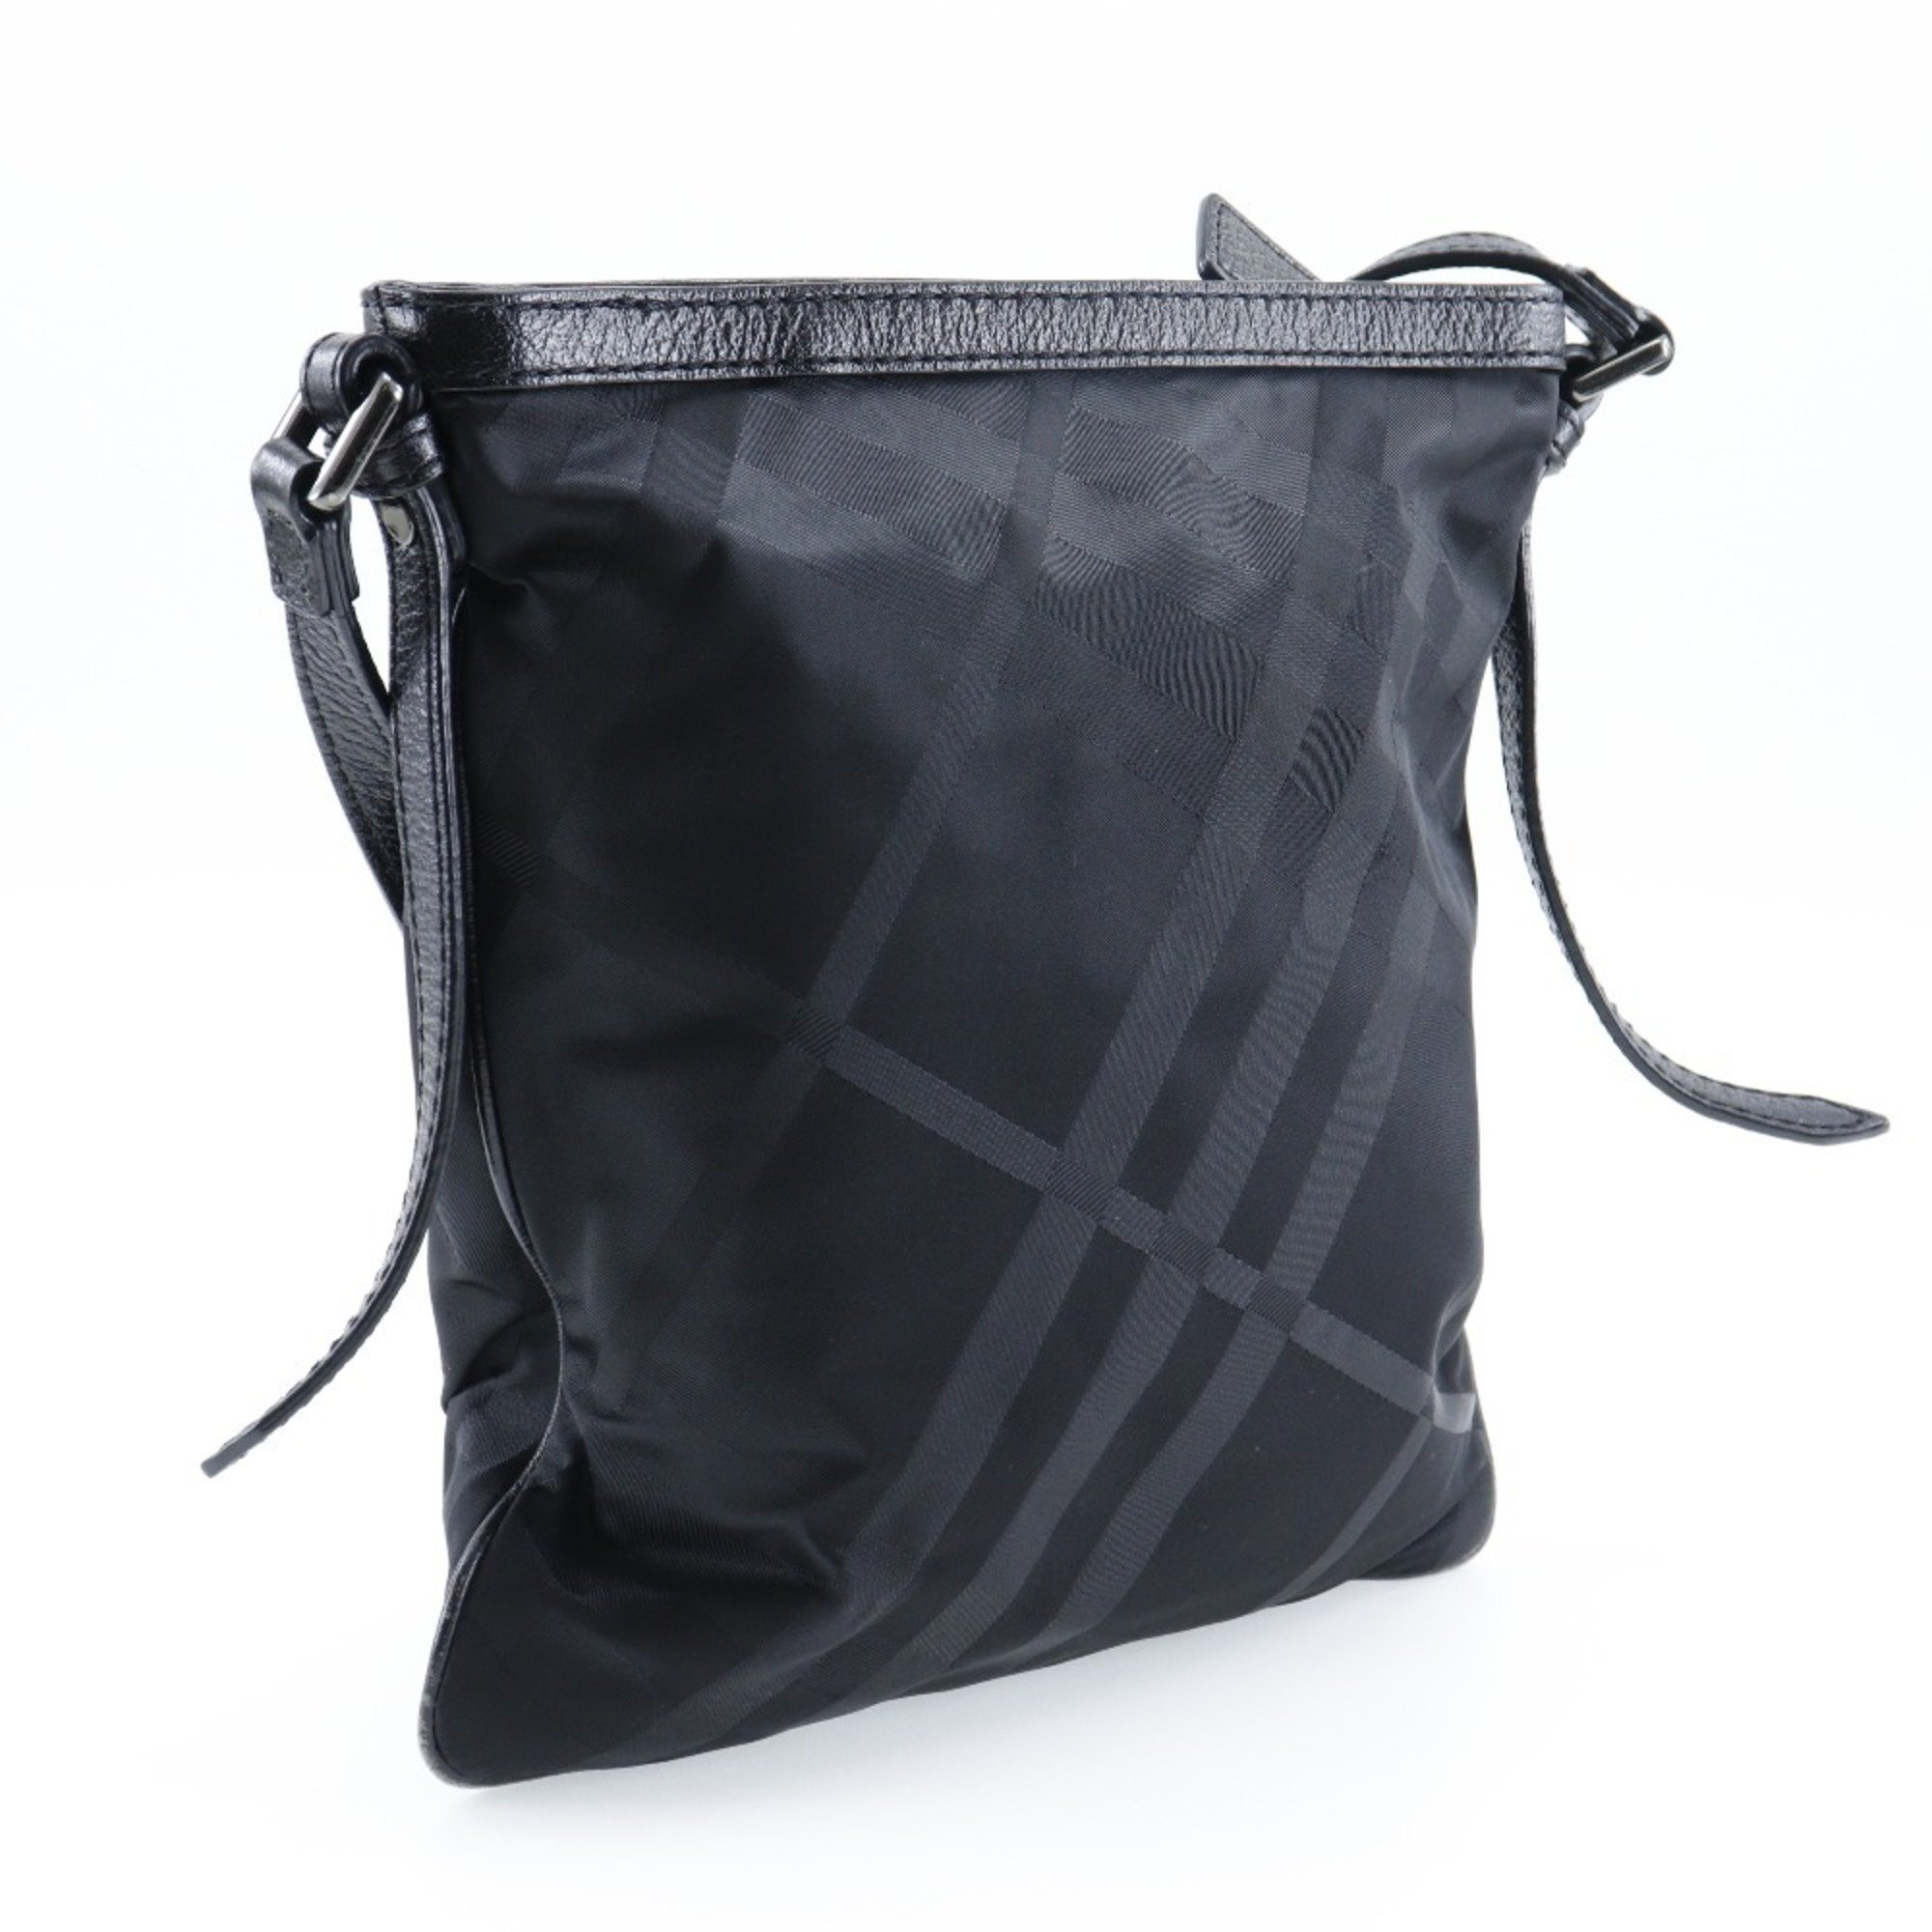 Burberry BURBERRY Shoulder Bag Nova Check Nylon Canvas Made in China Black Crossbody A5 Zipper Unisex